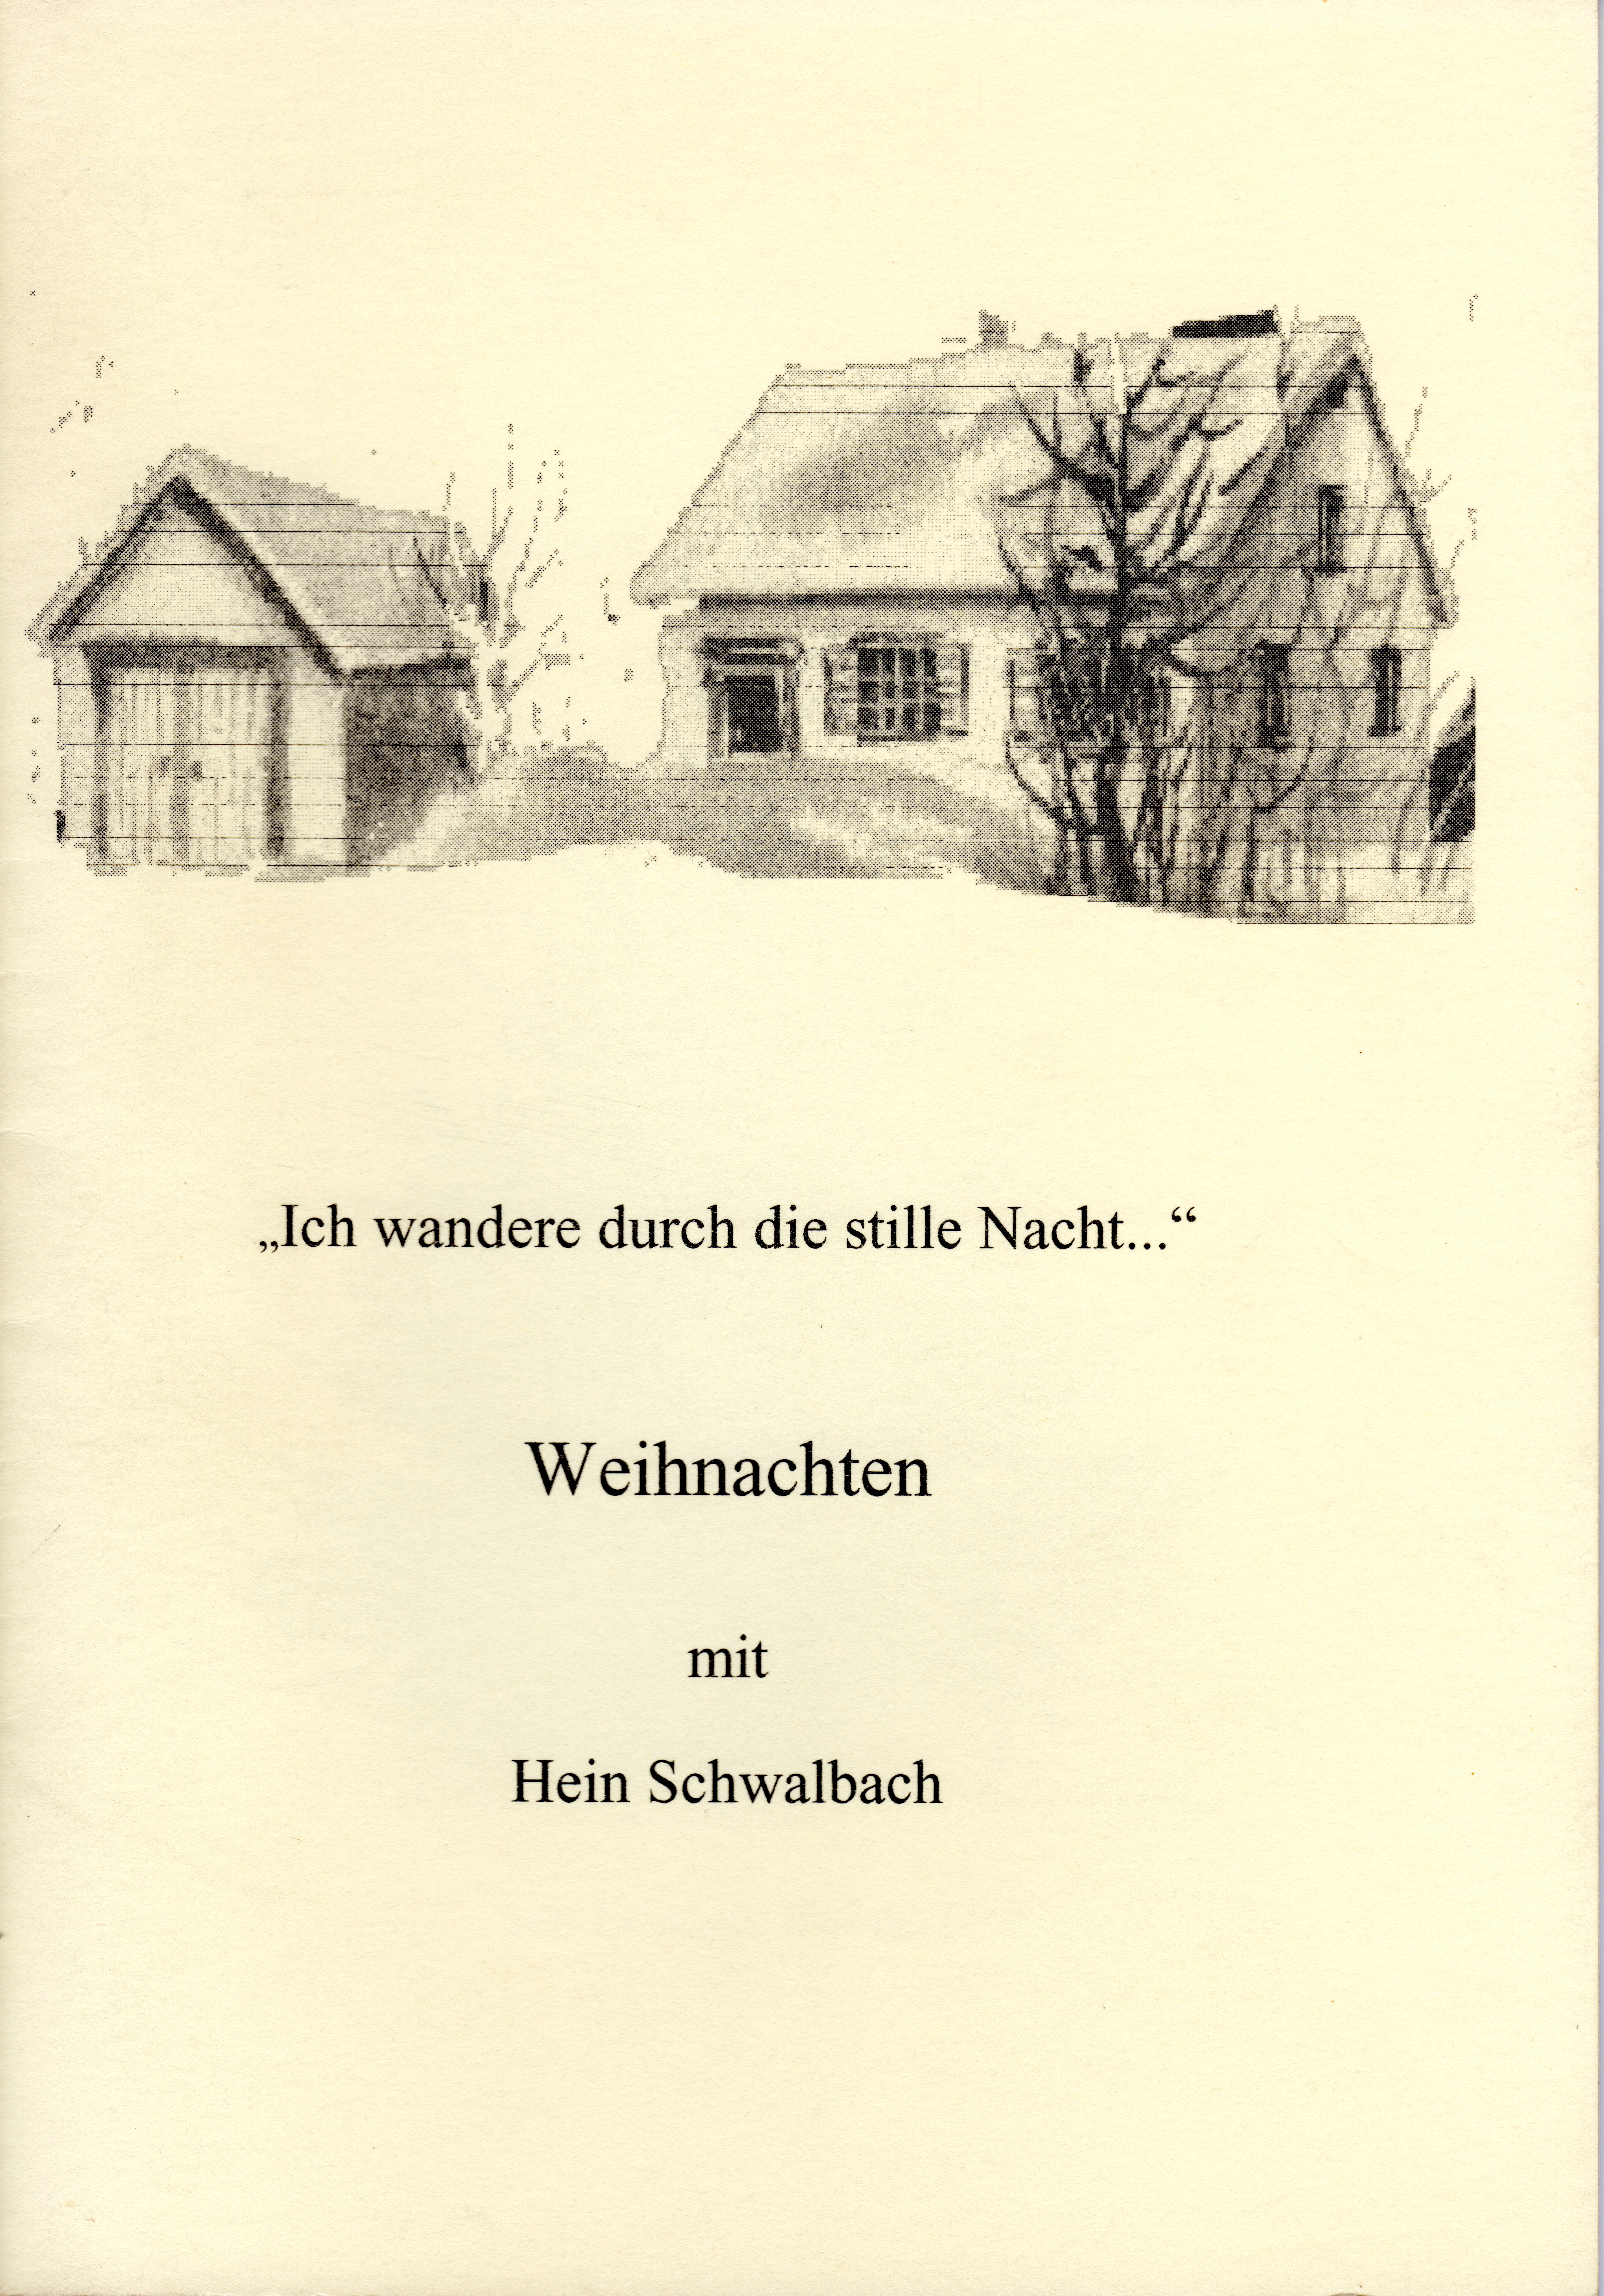 Weihnachten
(H. Schwalbach)